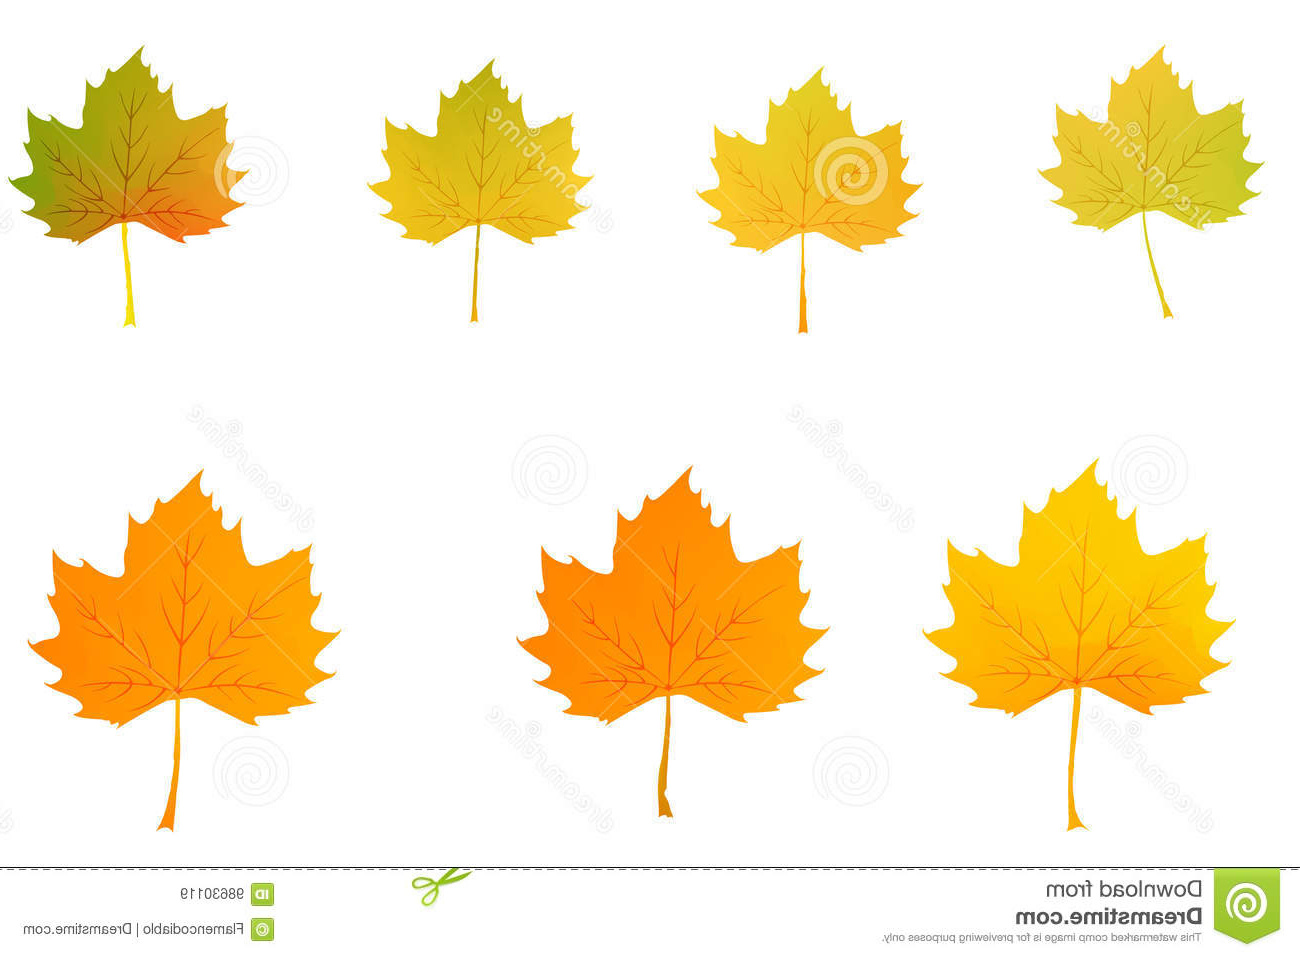 dessin regle colore de vecteur de feuille derable dautomne avec dessin de feuille d automne